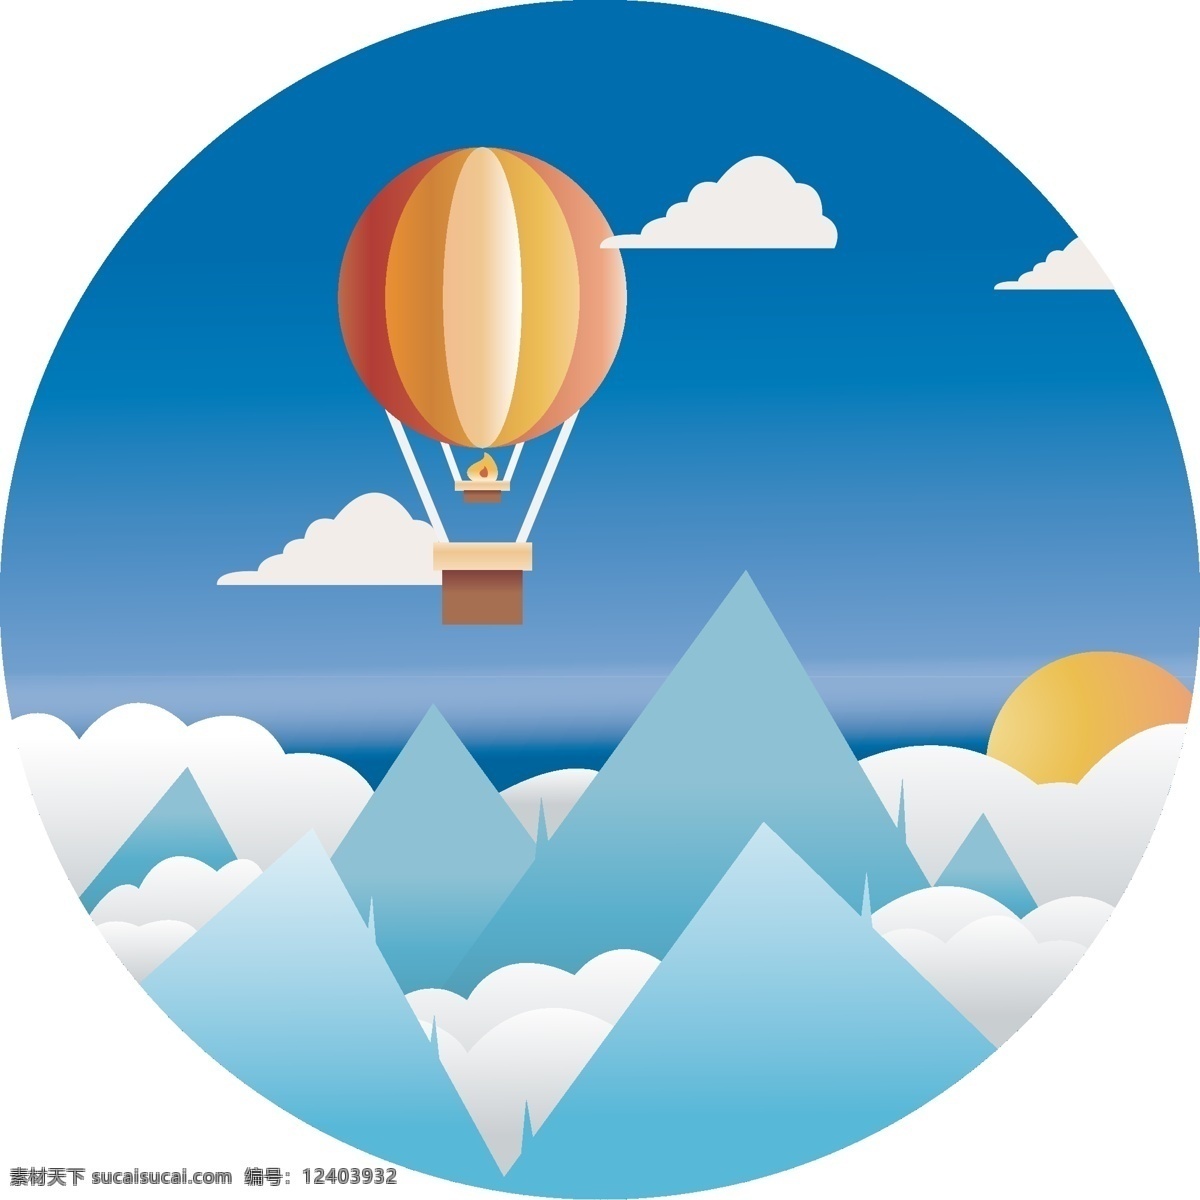 矢量 蓝天 热气球 景色 唯美风 山峰 装饰图案